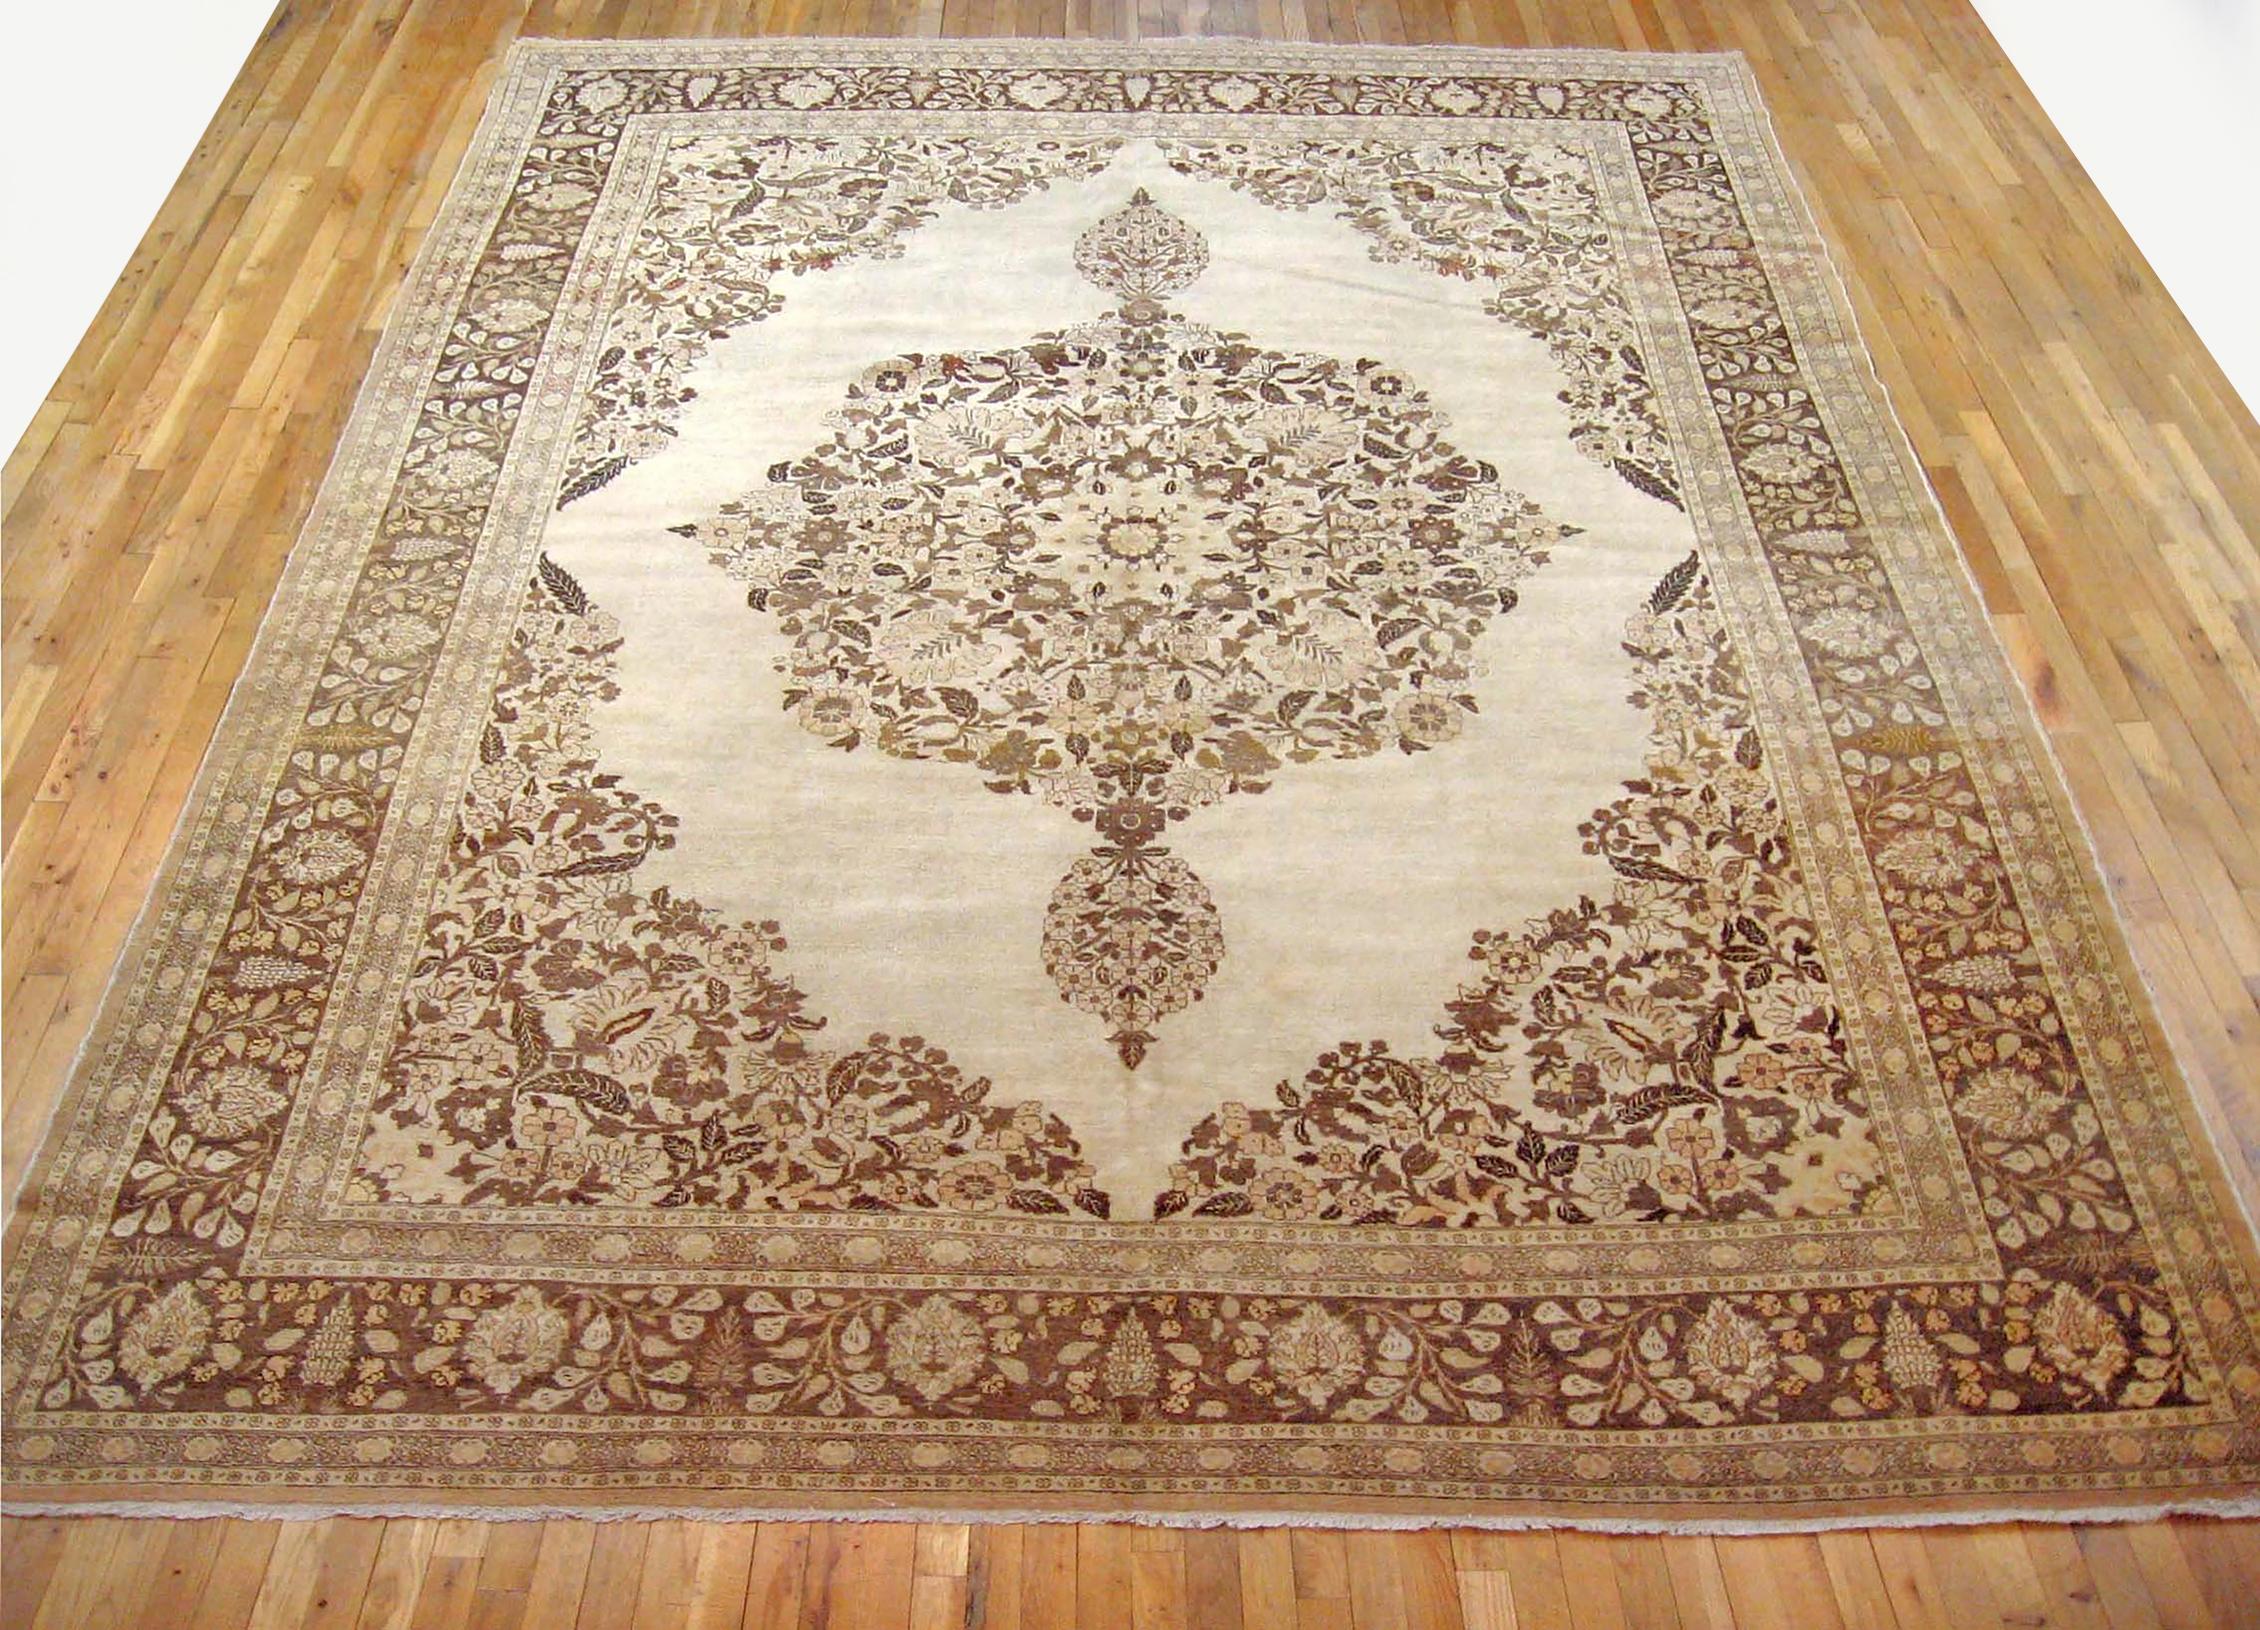 Antique Persian Tabriz Oriental carpet, circa 1910, Room Sized

An antique Persian Tabriz oriental carpet, circa 1910. Size: 12'9